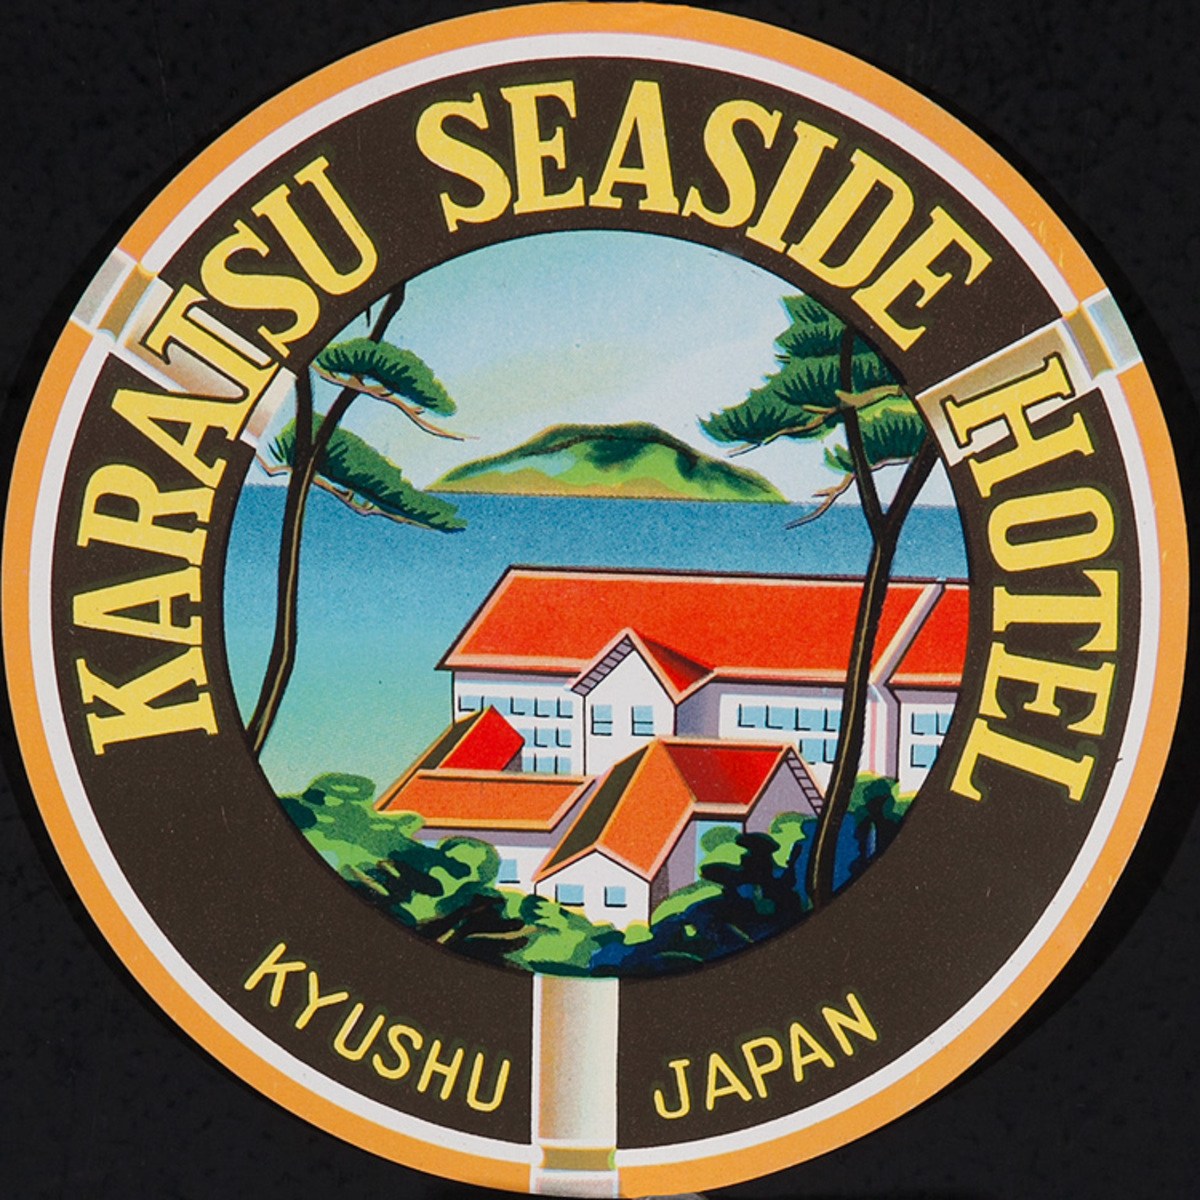 Karatsu Seaside Hotel, Kyushu Japan Luggage Label